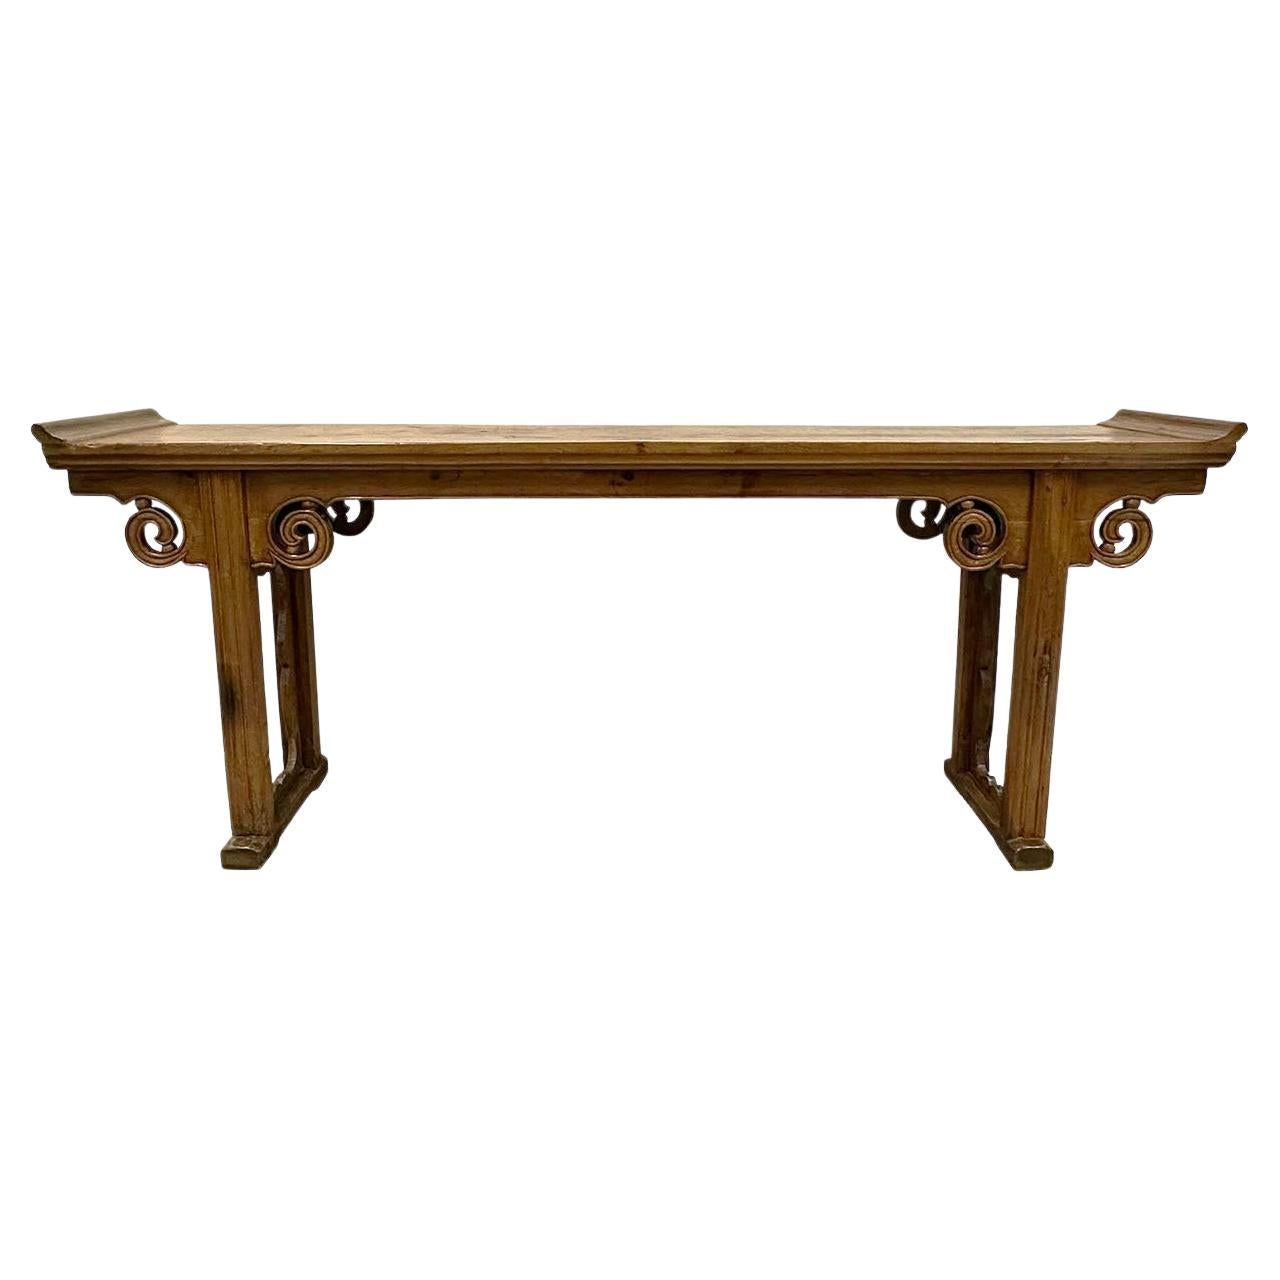 Table d'autel chinoise ancienne du 19ème siècle sculptée et ouverte, table/table console Sofa